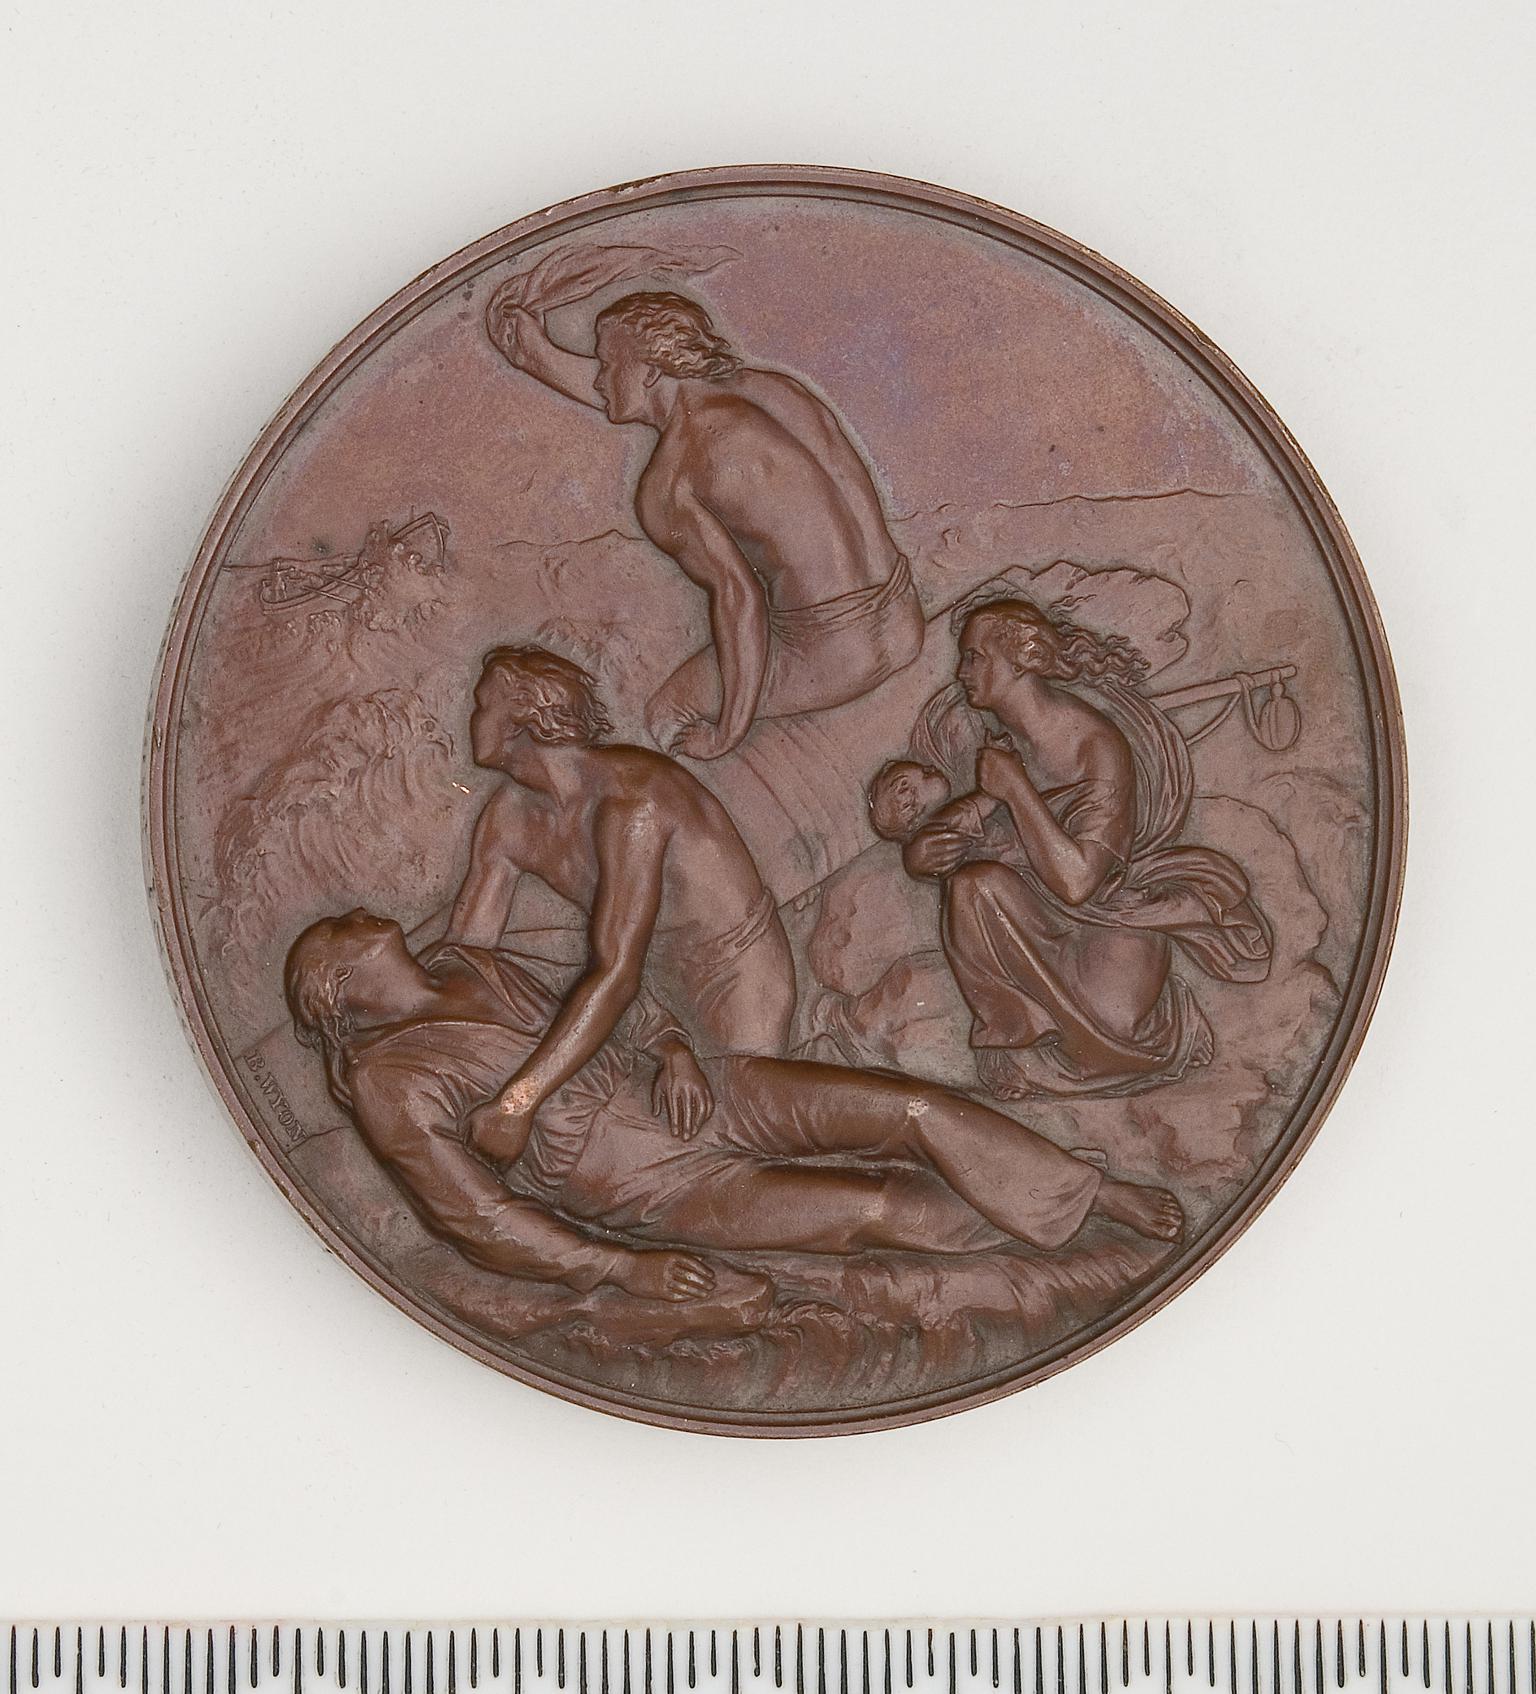 Board of Trade, Sea Gallantry medal